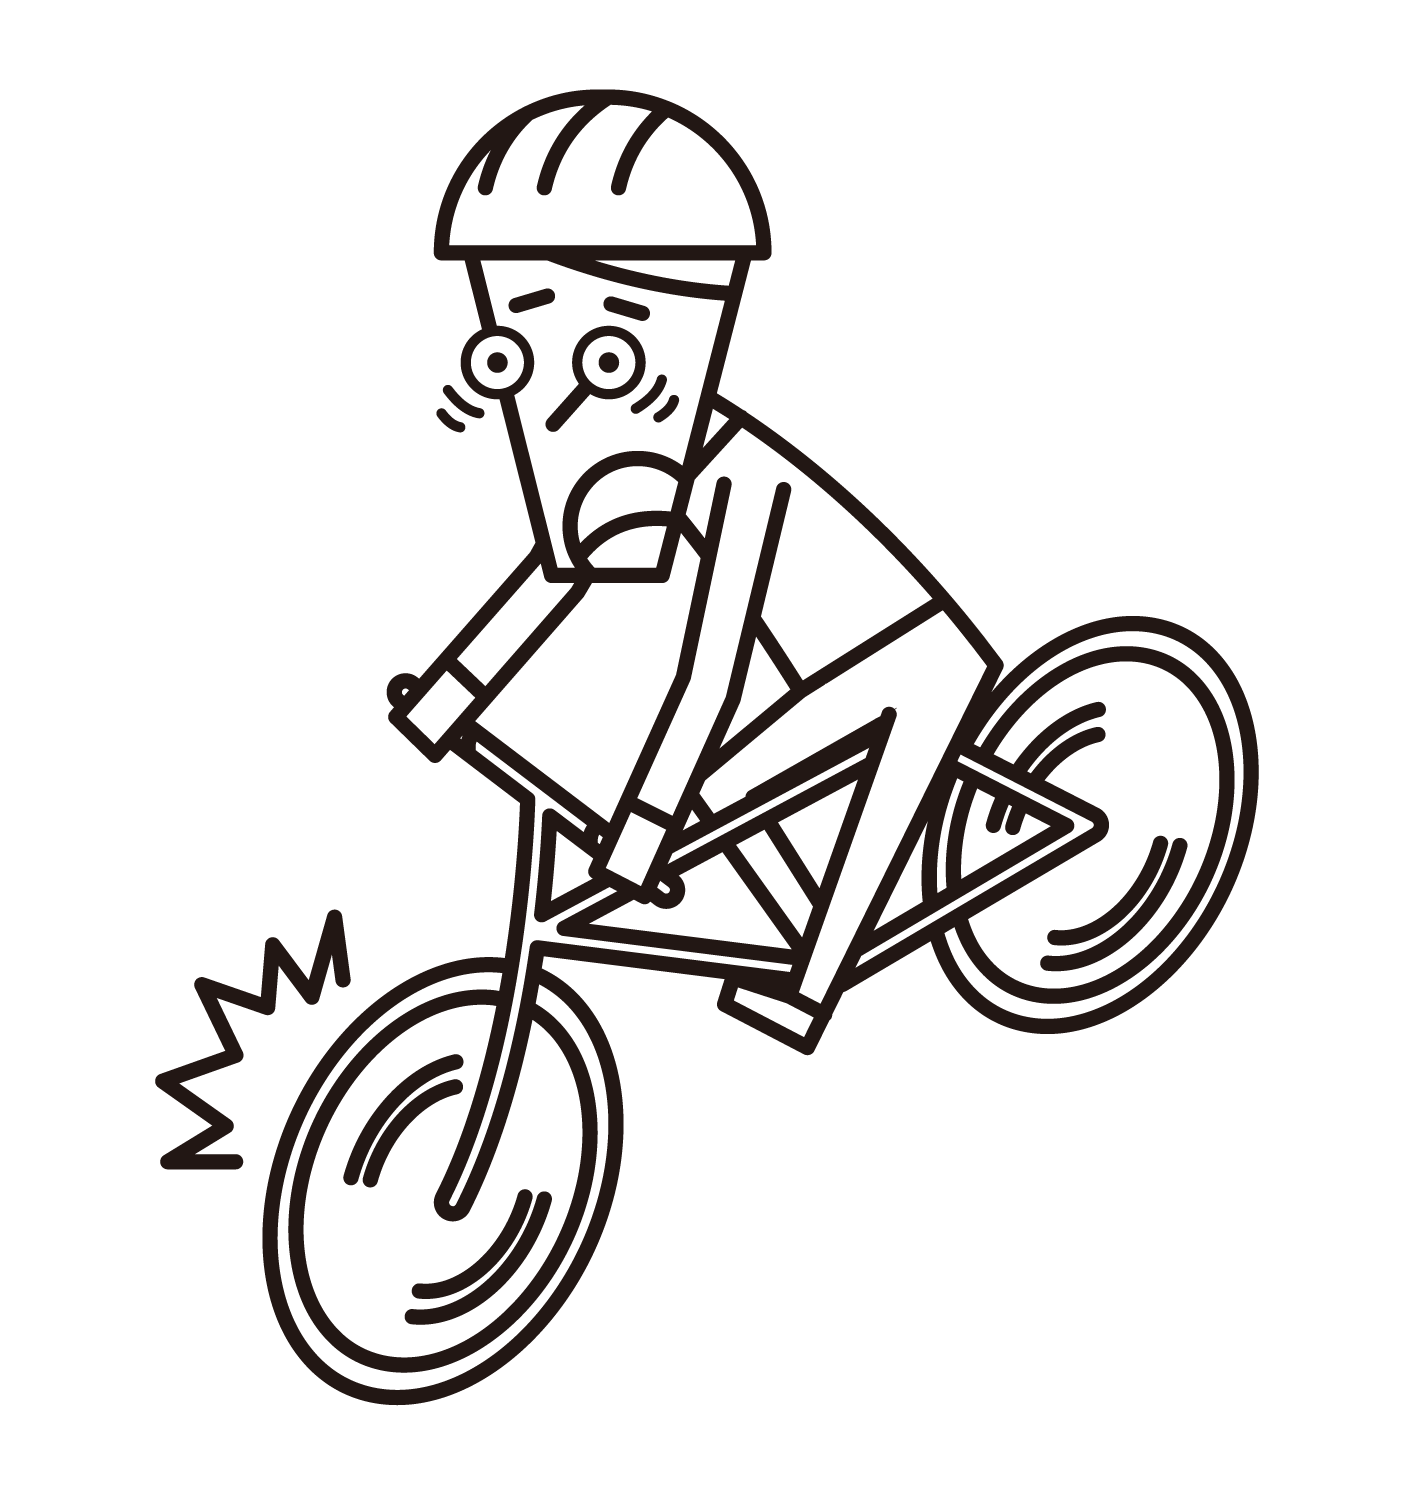 急ブレーキをかける自転車乗り（男性）のイラスト